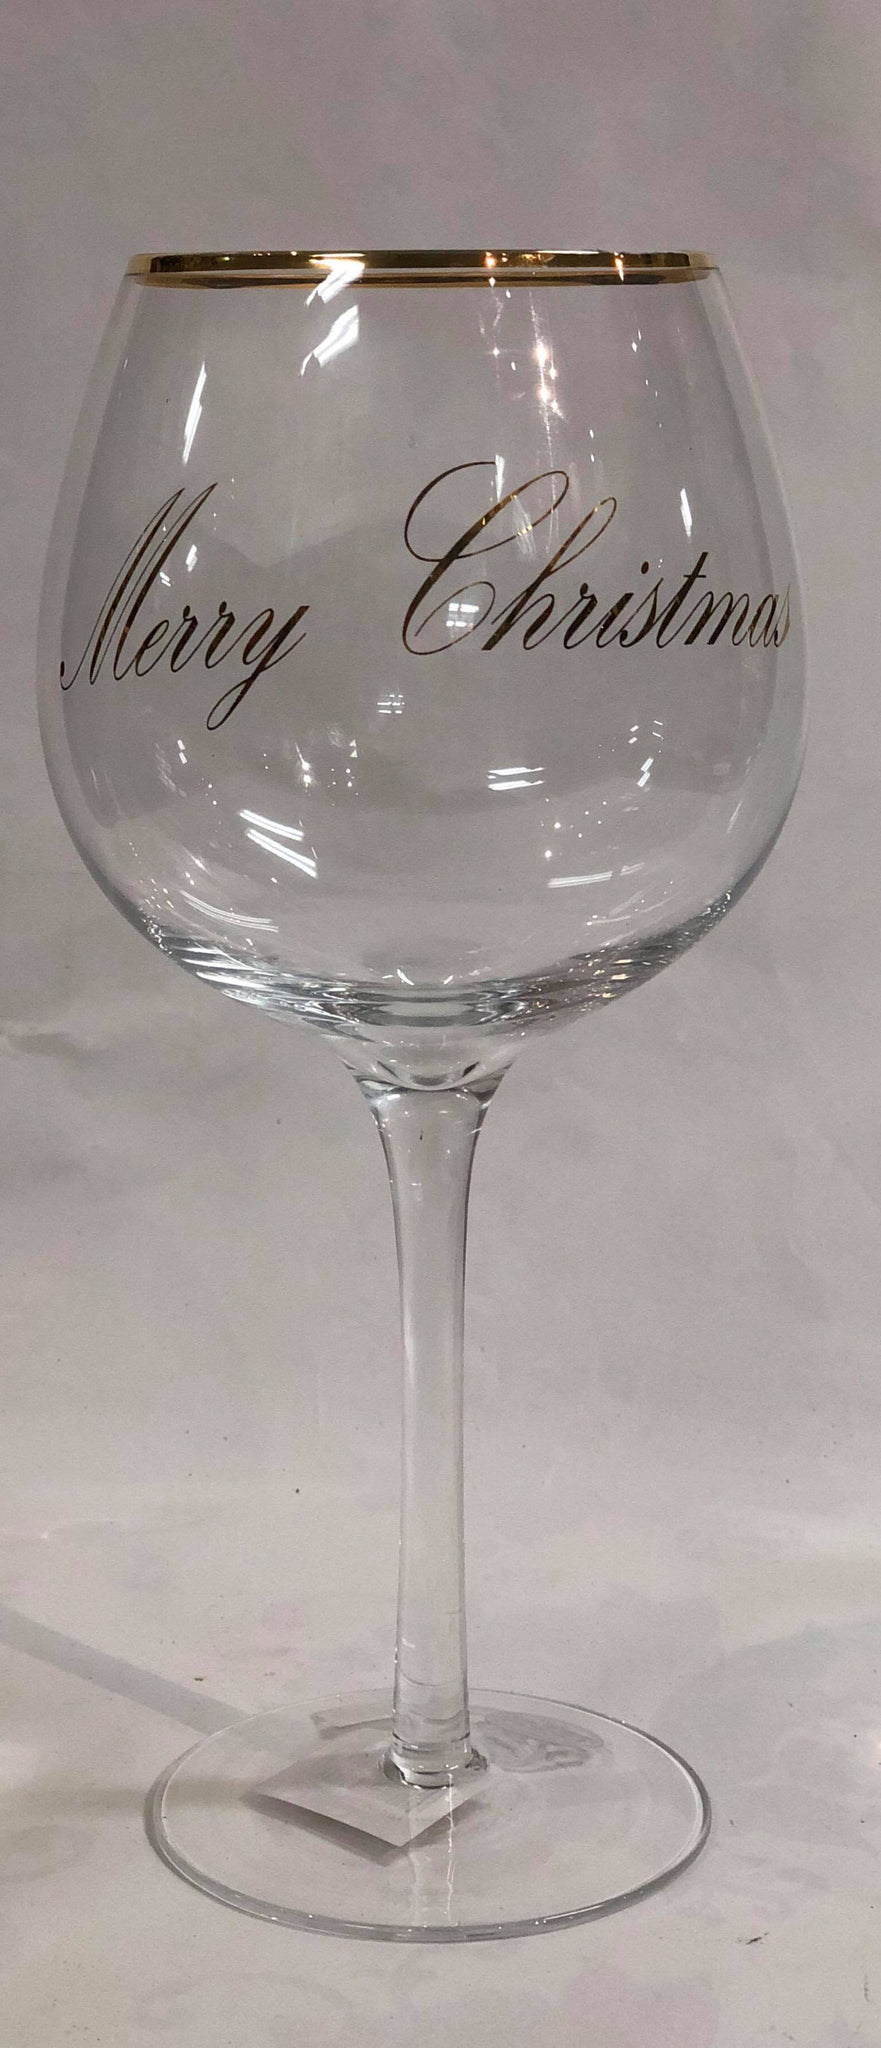 Christmas wine glass "Merry Christmas"